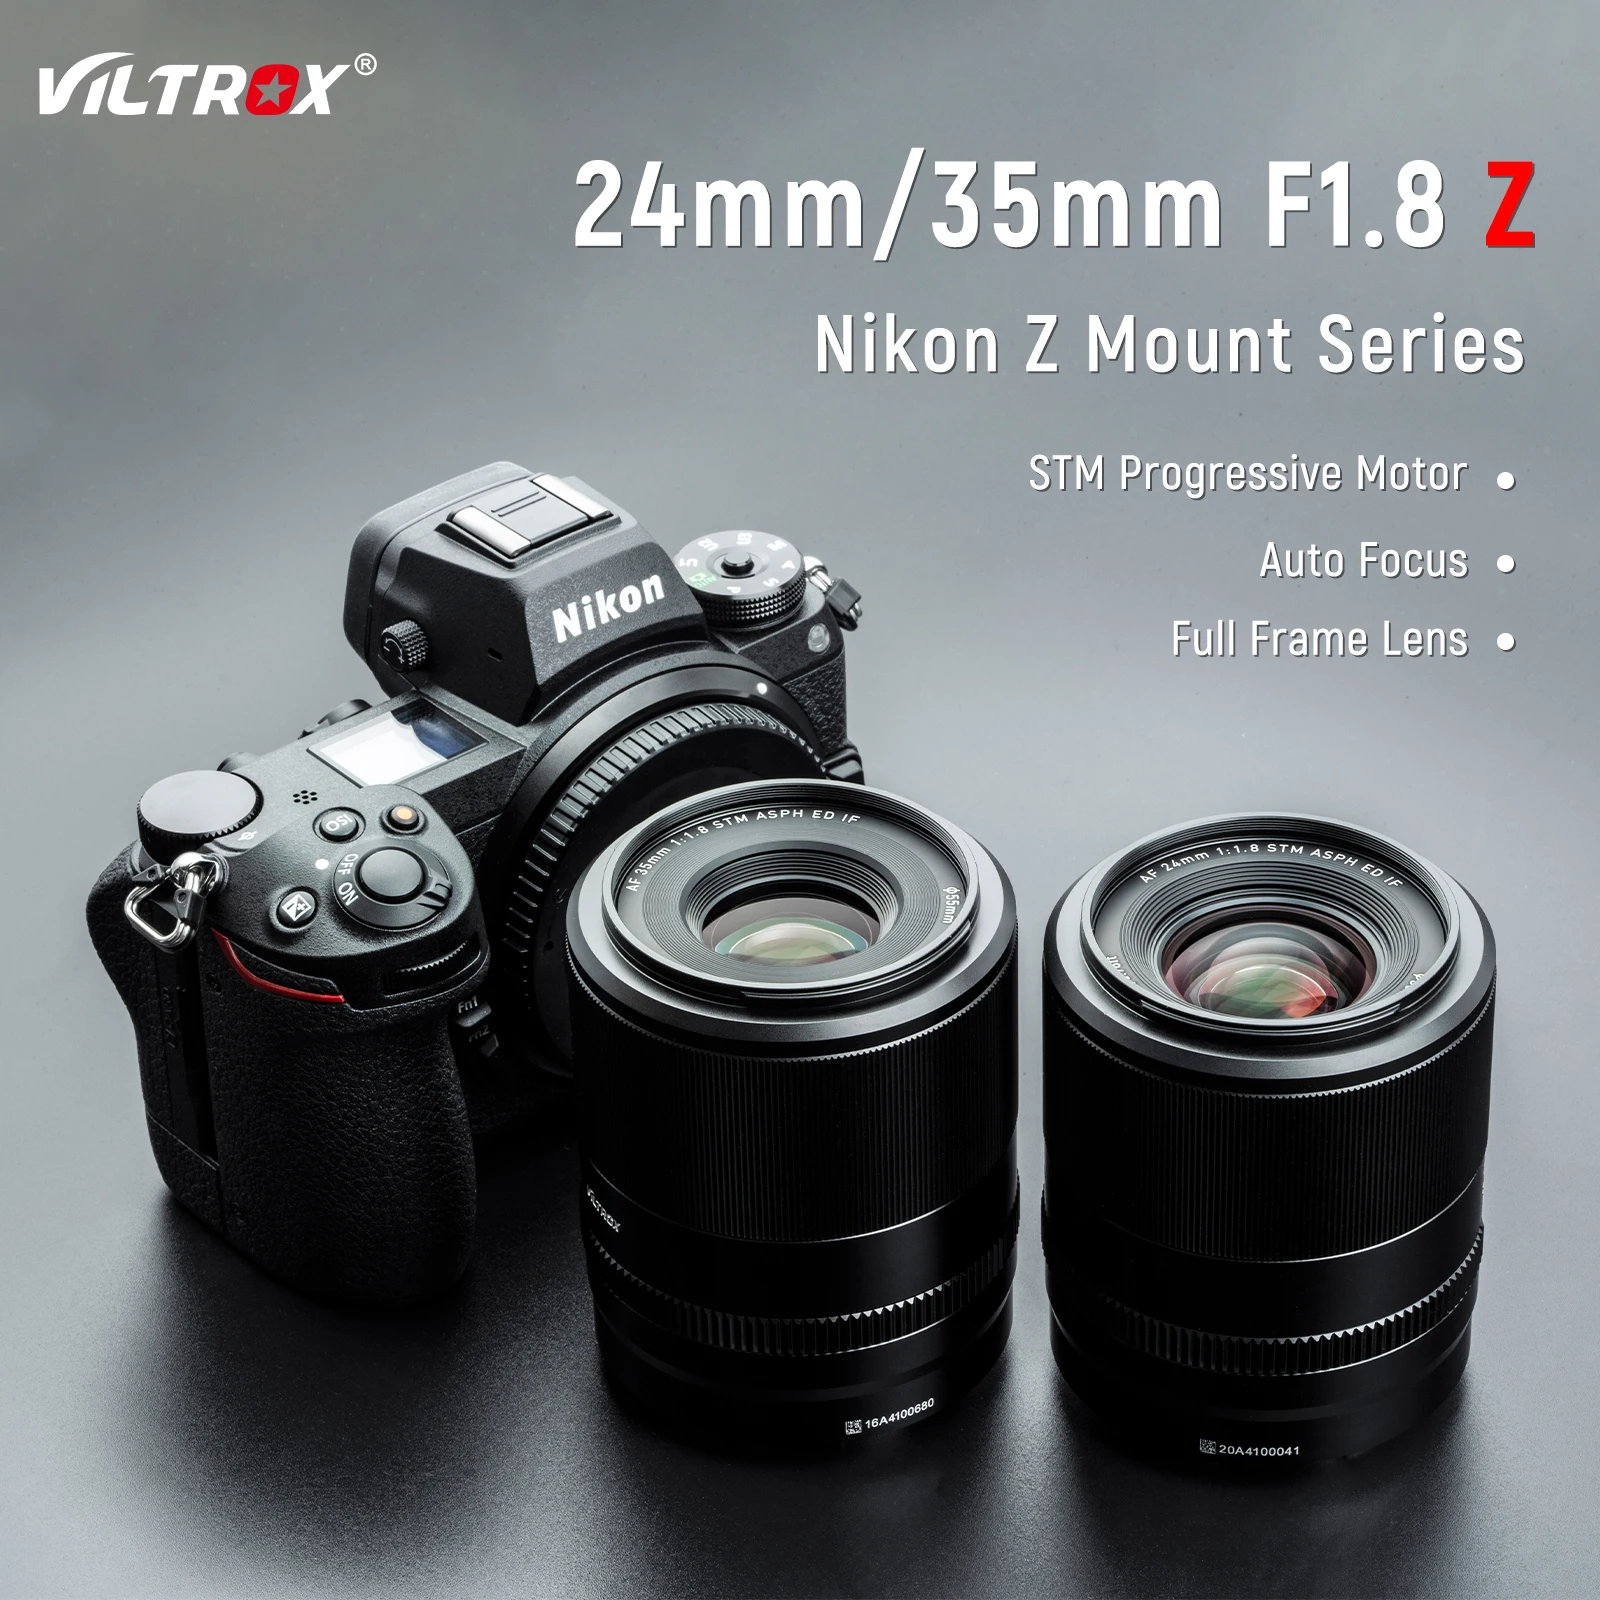 VILTROX 24mm 35mm F1.8 Auto Focus Full Frame Lens Wide Angle Prime Lens Large Aperture for Nikon Lens Z Mount Z7 Z50 Camera Lens images - 6